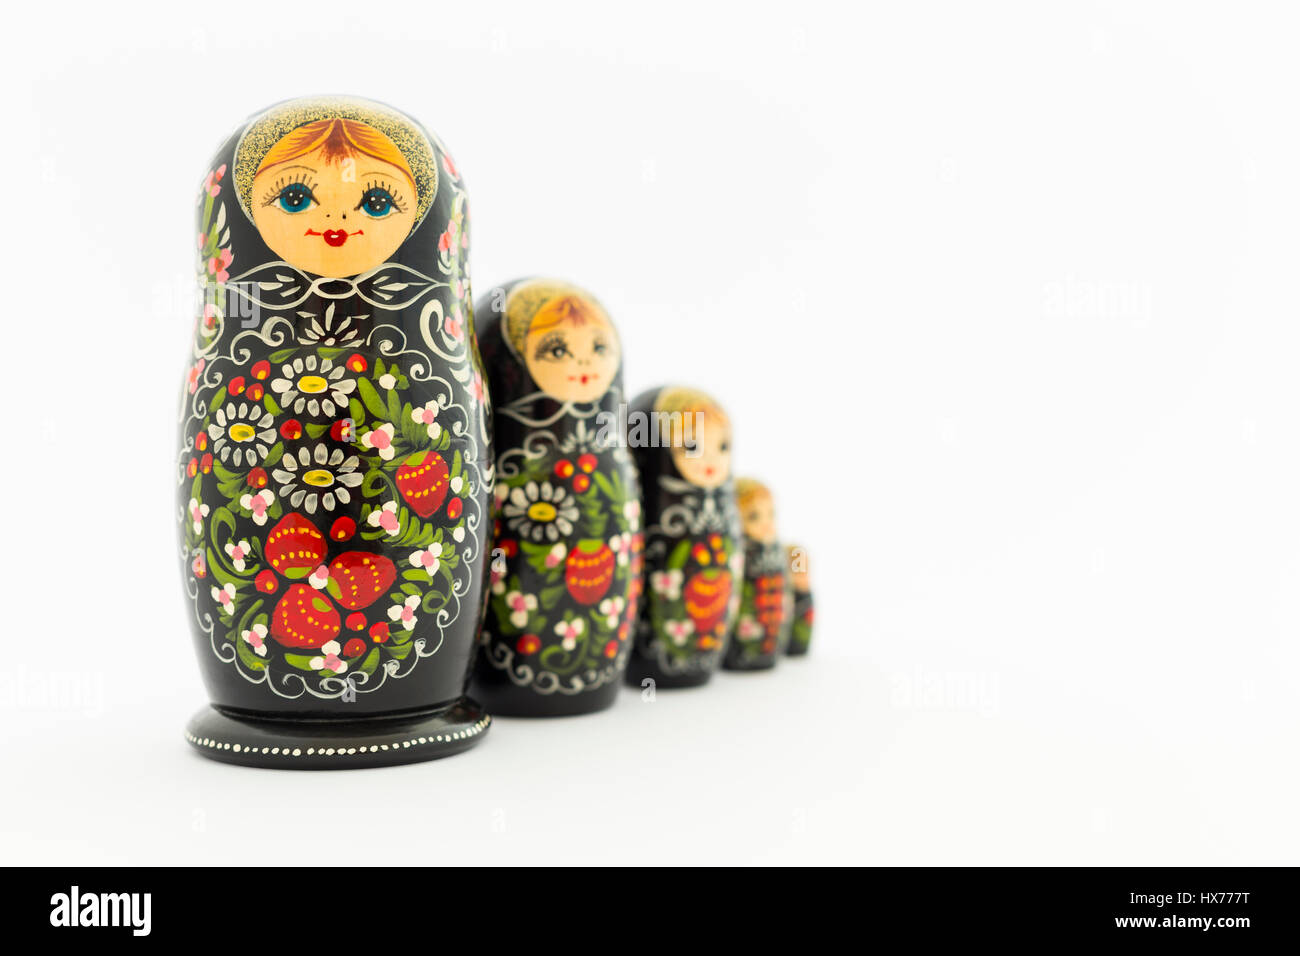 Hermosa negro matryoshka nesting rusa dolls (muñecas) con blanco, verde y rojo pintura delante de un fondo blanco Foto de stock